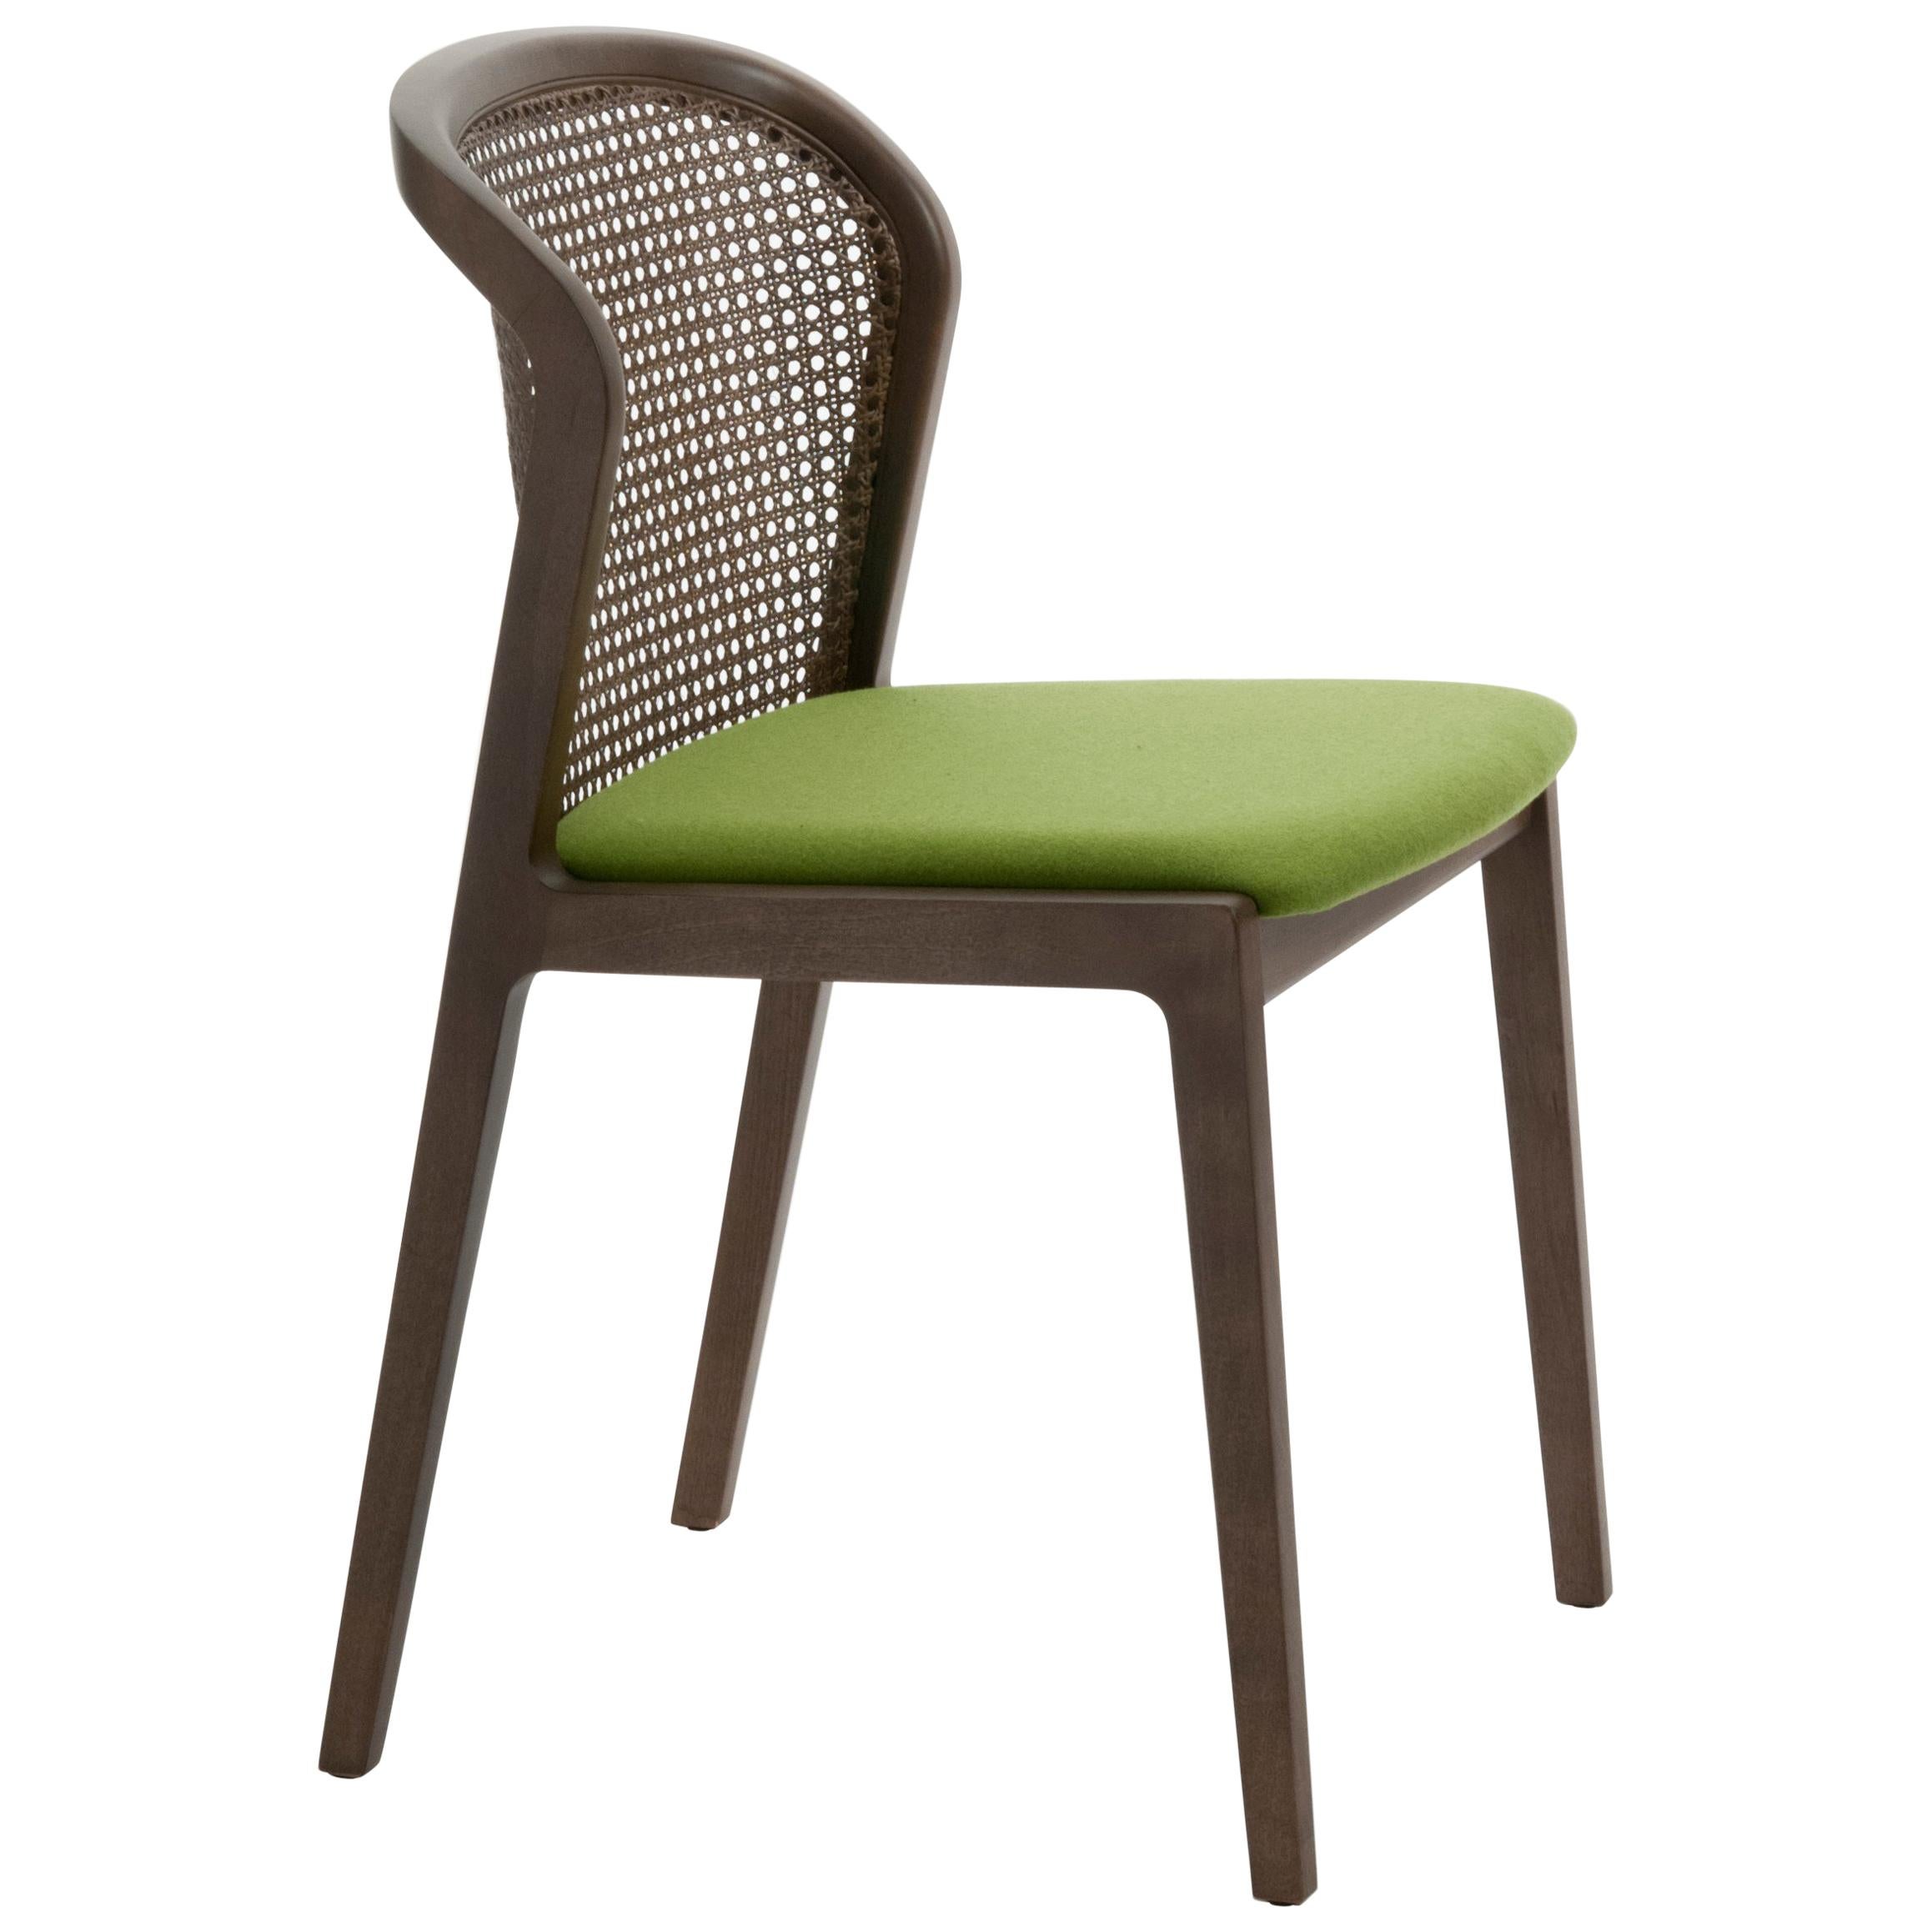 Vienna ist ein außergewöhnlich komfortabler und eleganter Stuhl, der von Emmanuel Gallina entworfen wurde, der gerne Brancusi zitiert, wenn er sagt, dass 